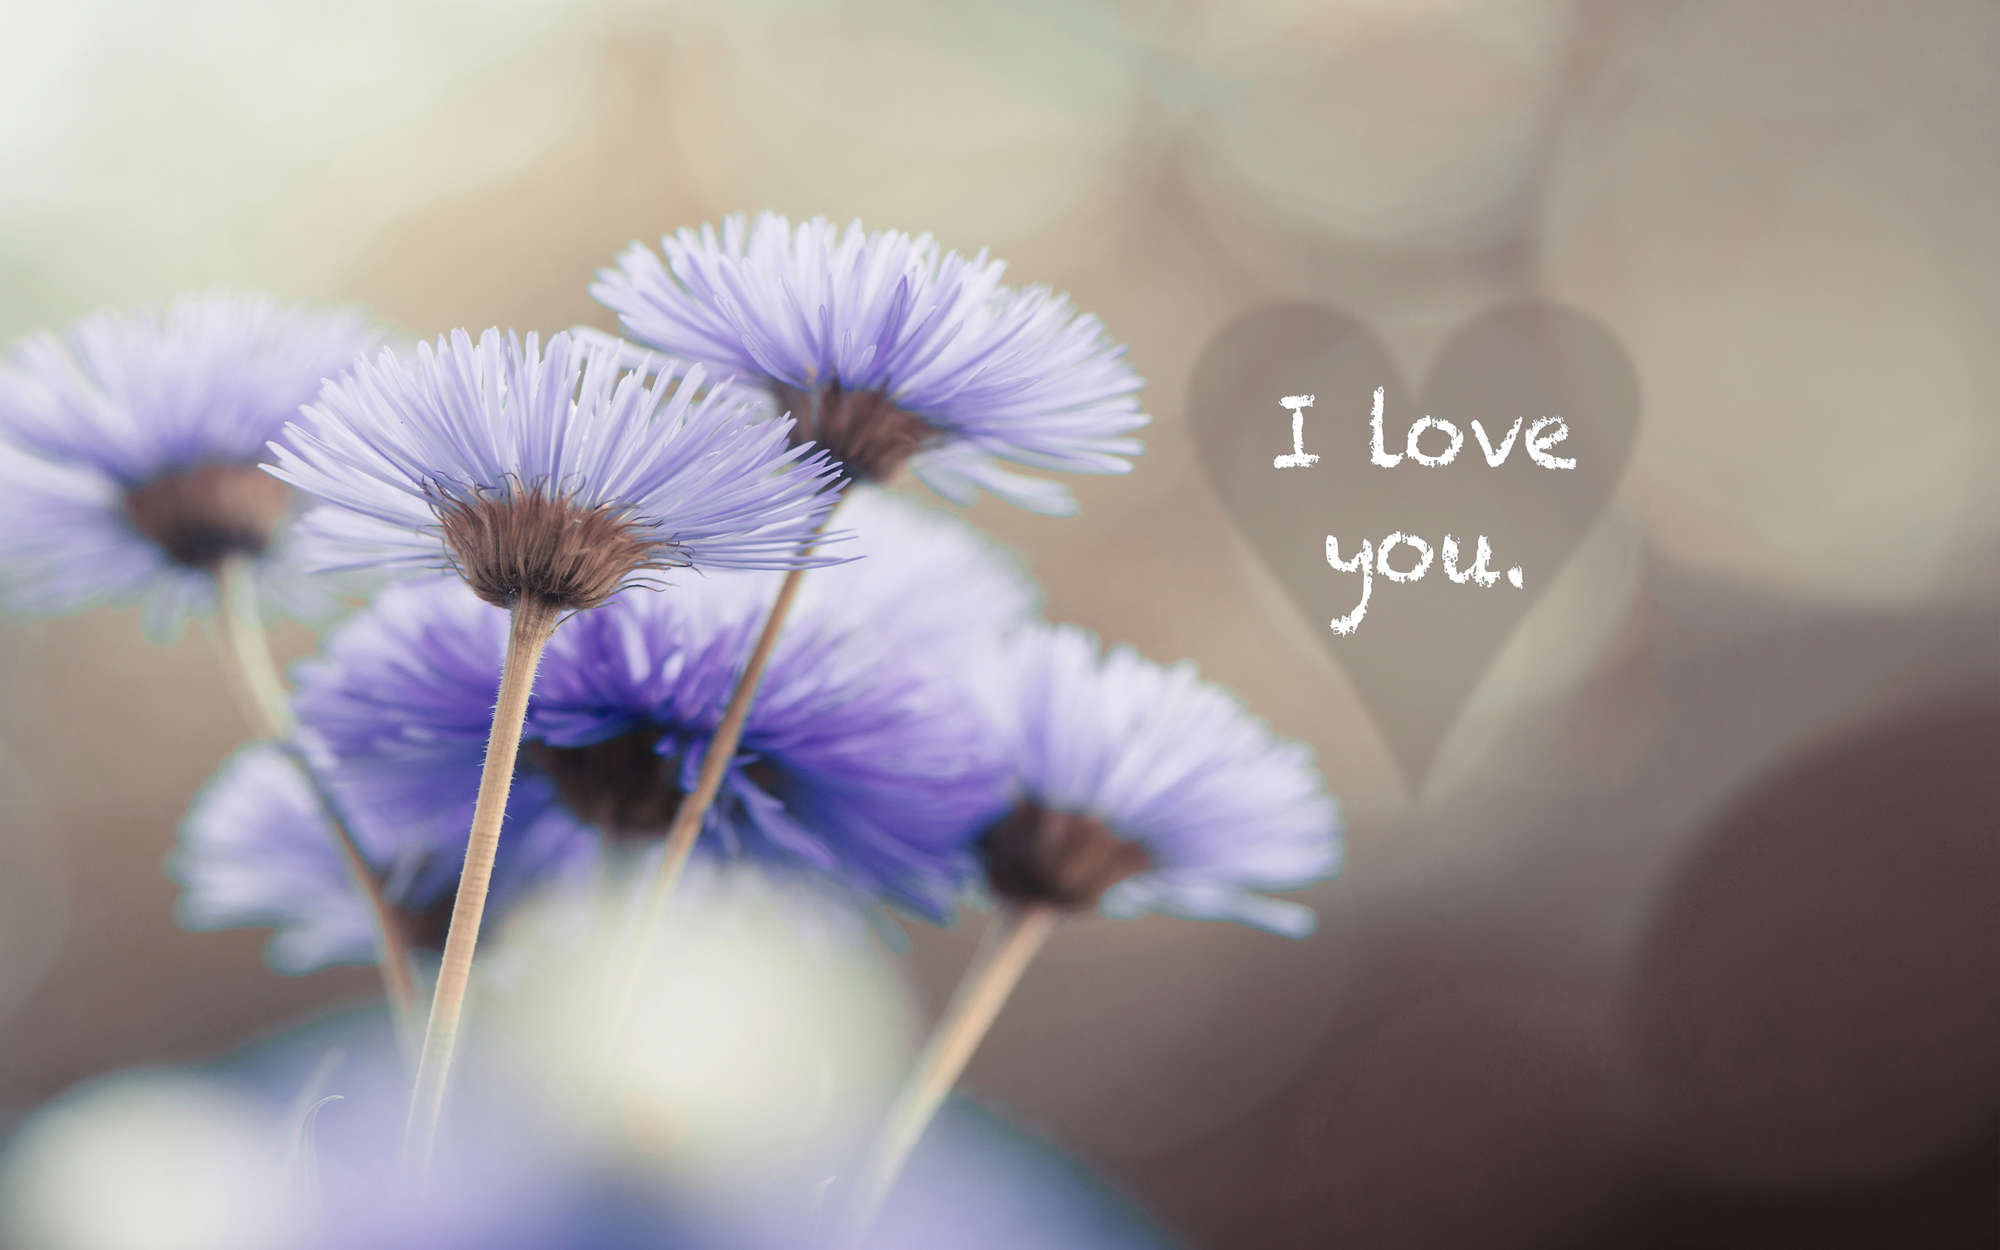             Fototapete Blumen in Violett mit Schriftzug "I love you" – Strukturiertes Vlies
        